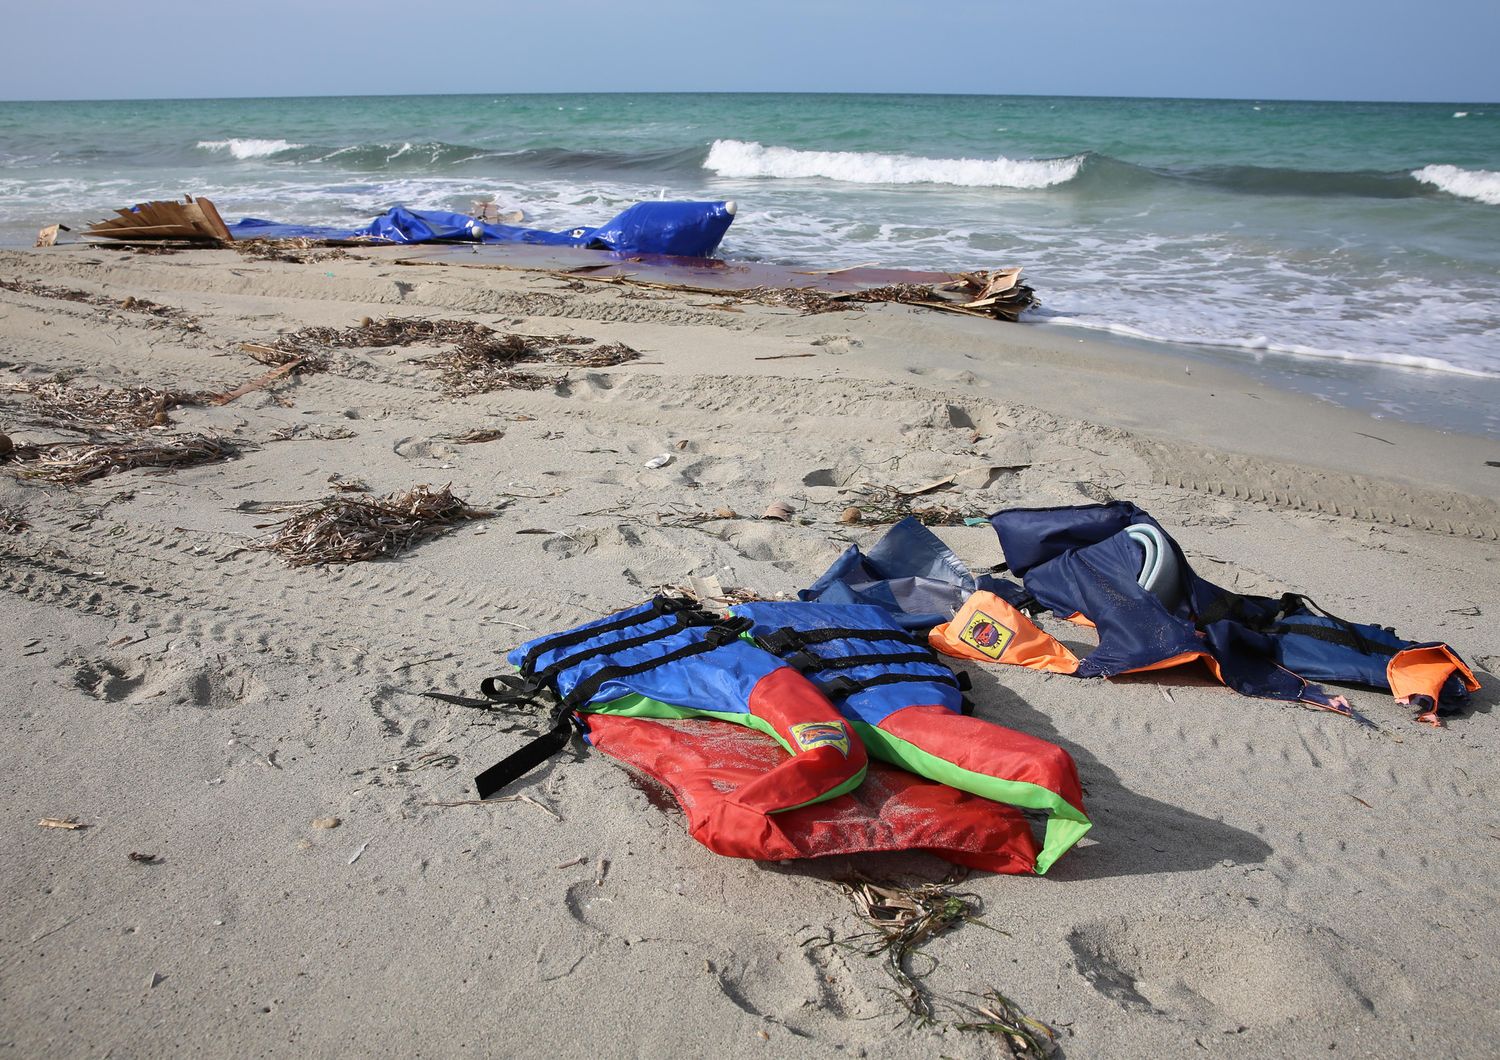 Naufragio migranti al largo della Libia: 3 bimbi annegati, 100 dispersi